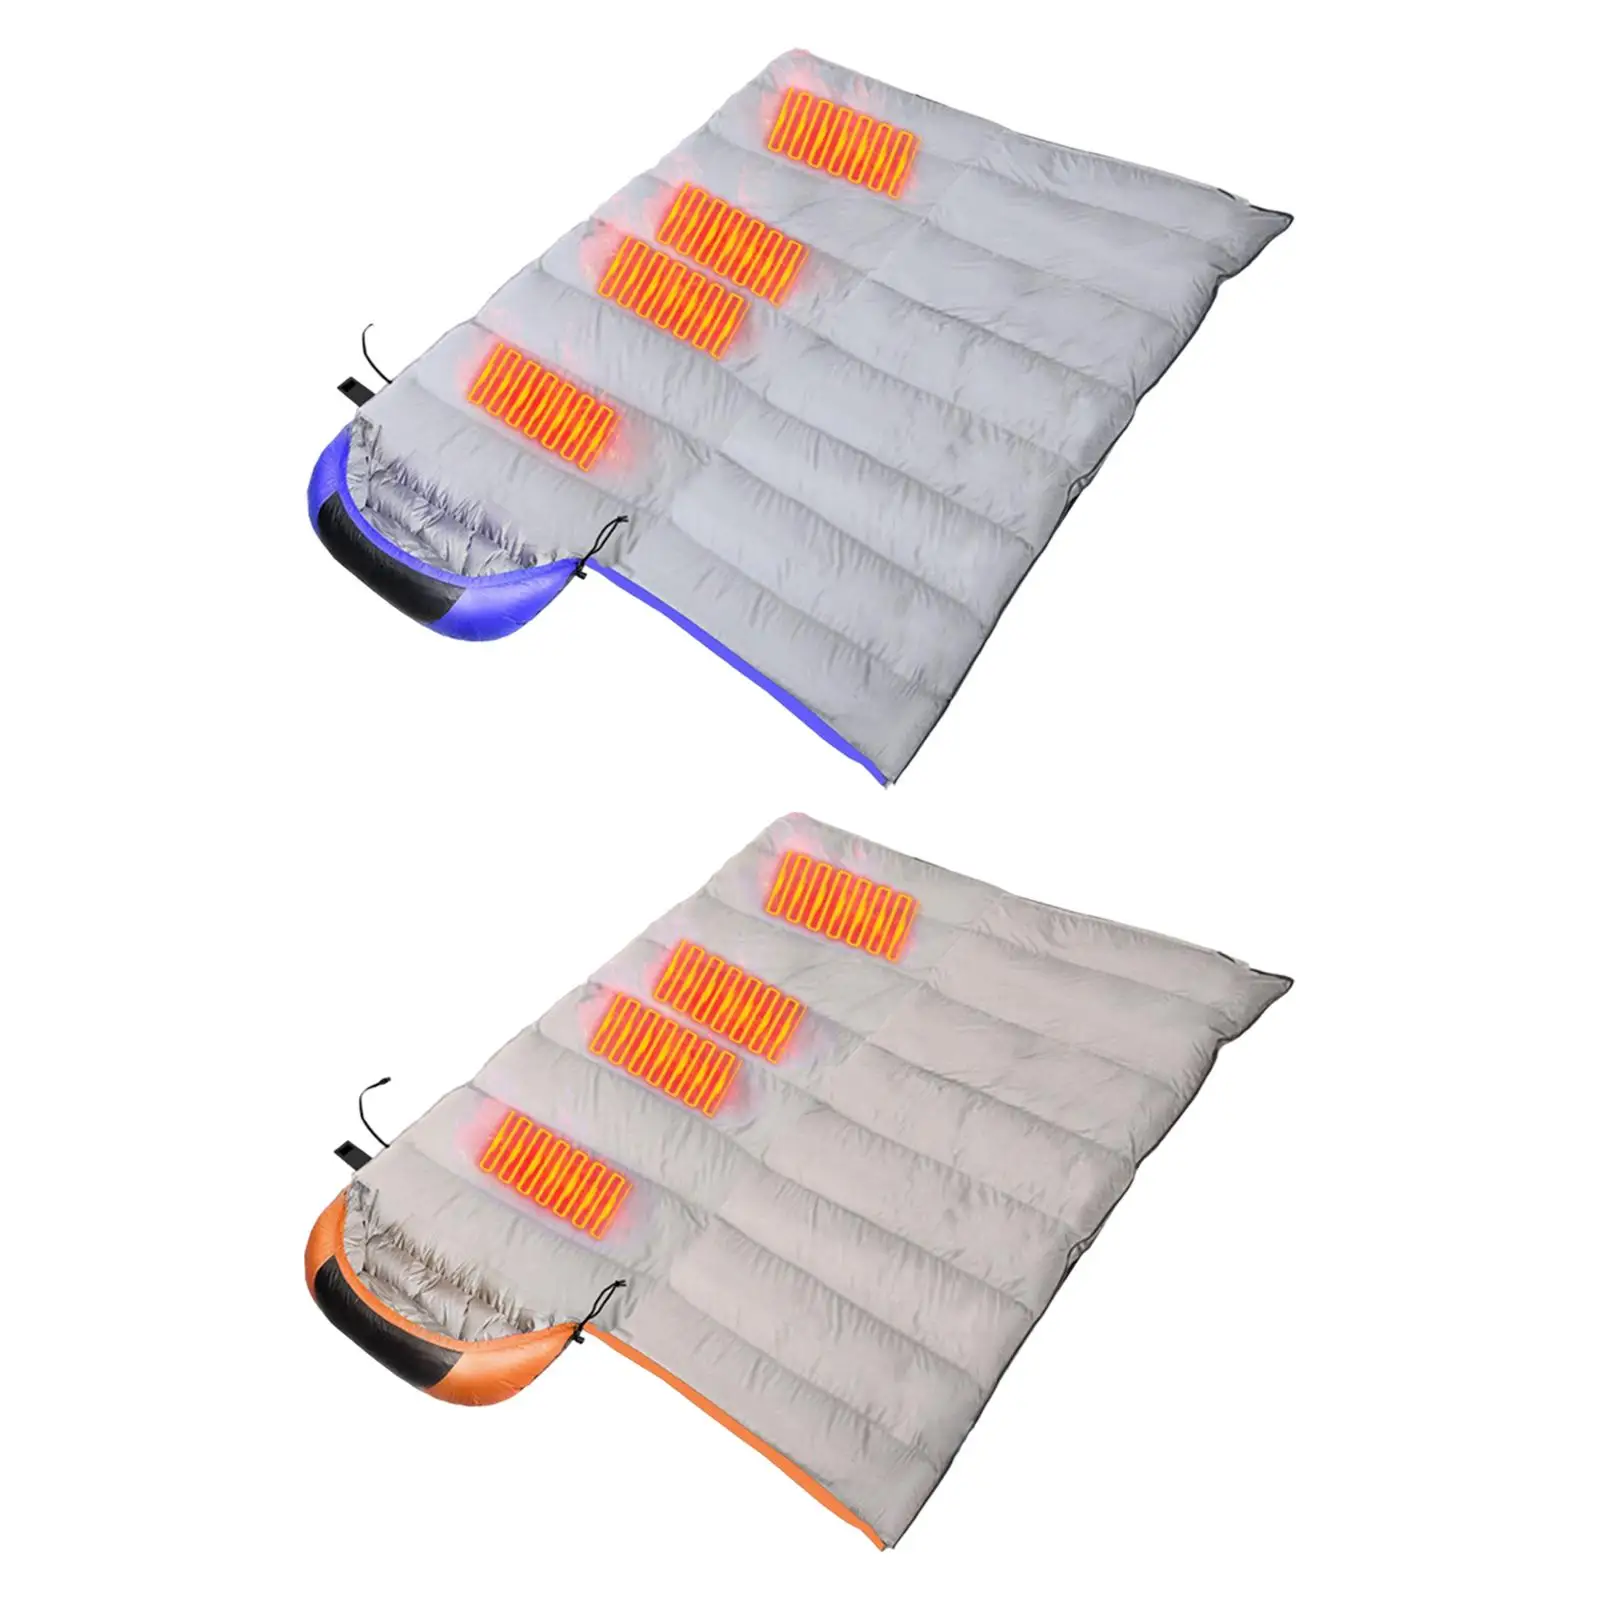 USB Heated Portable Sleepwear Waterproof Winter Sleepwear Soft Warm for